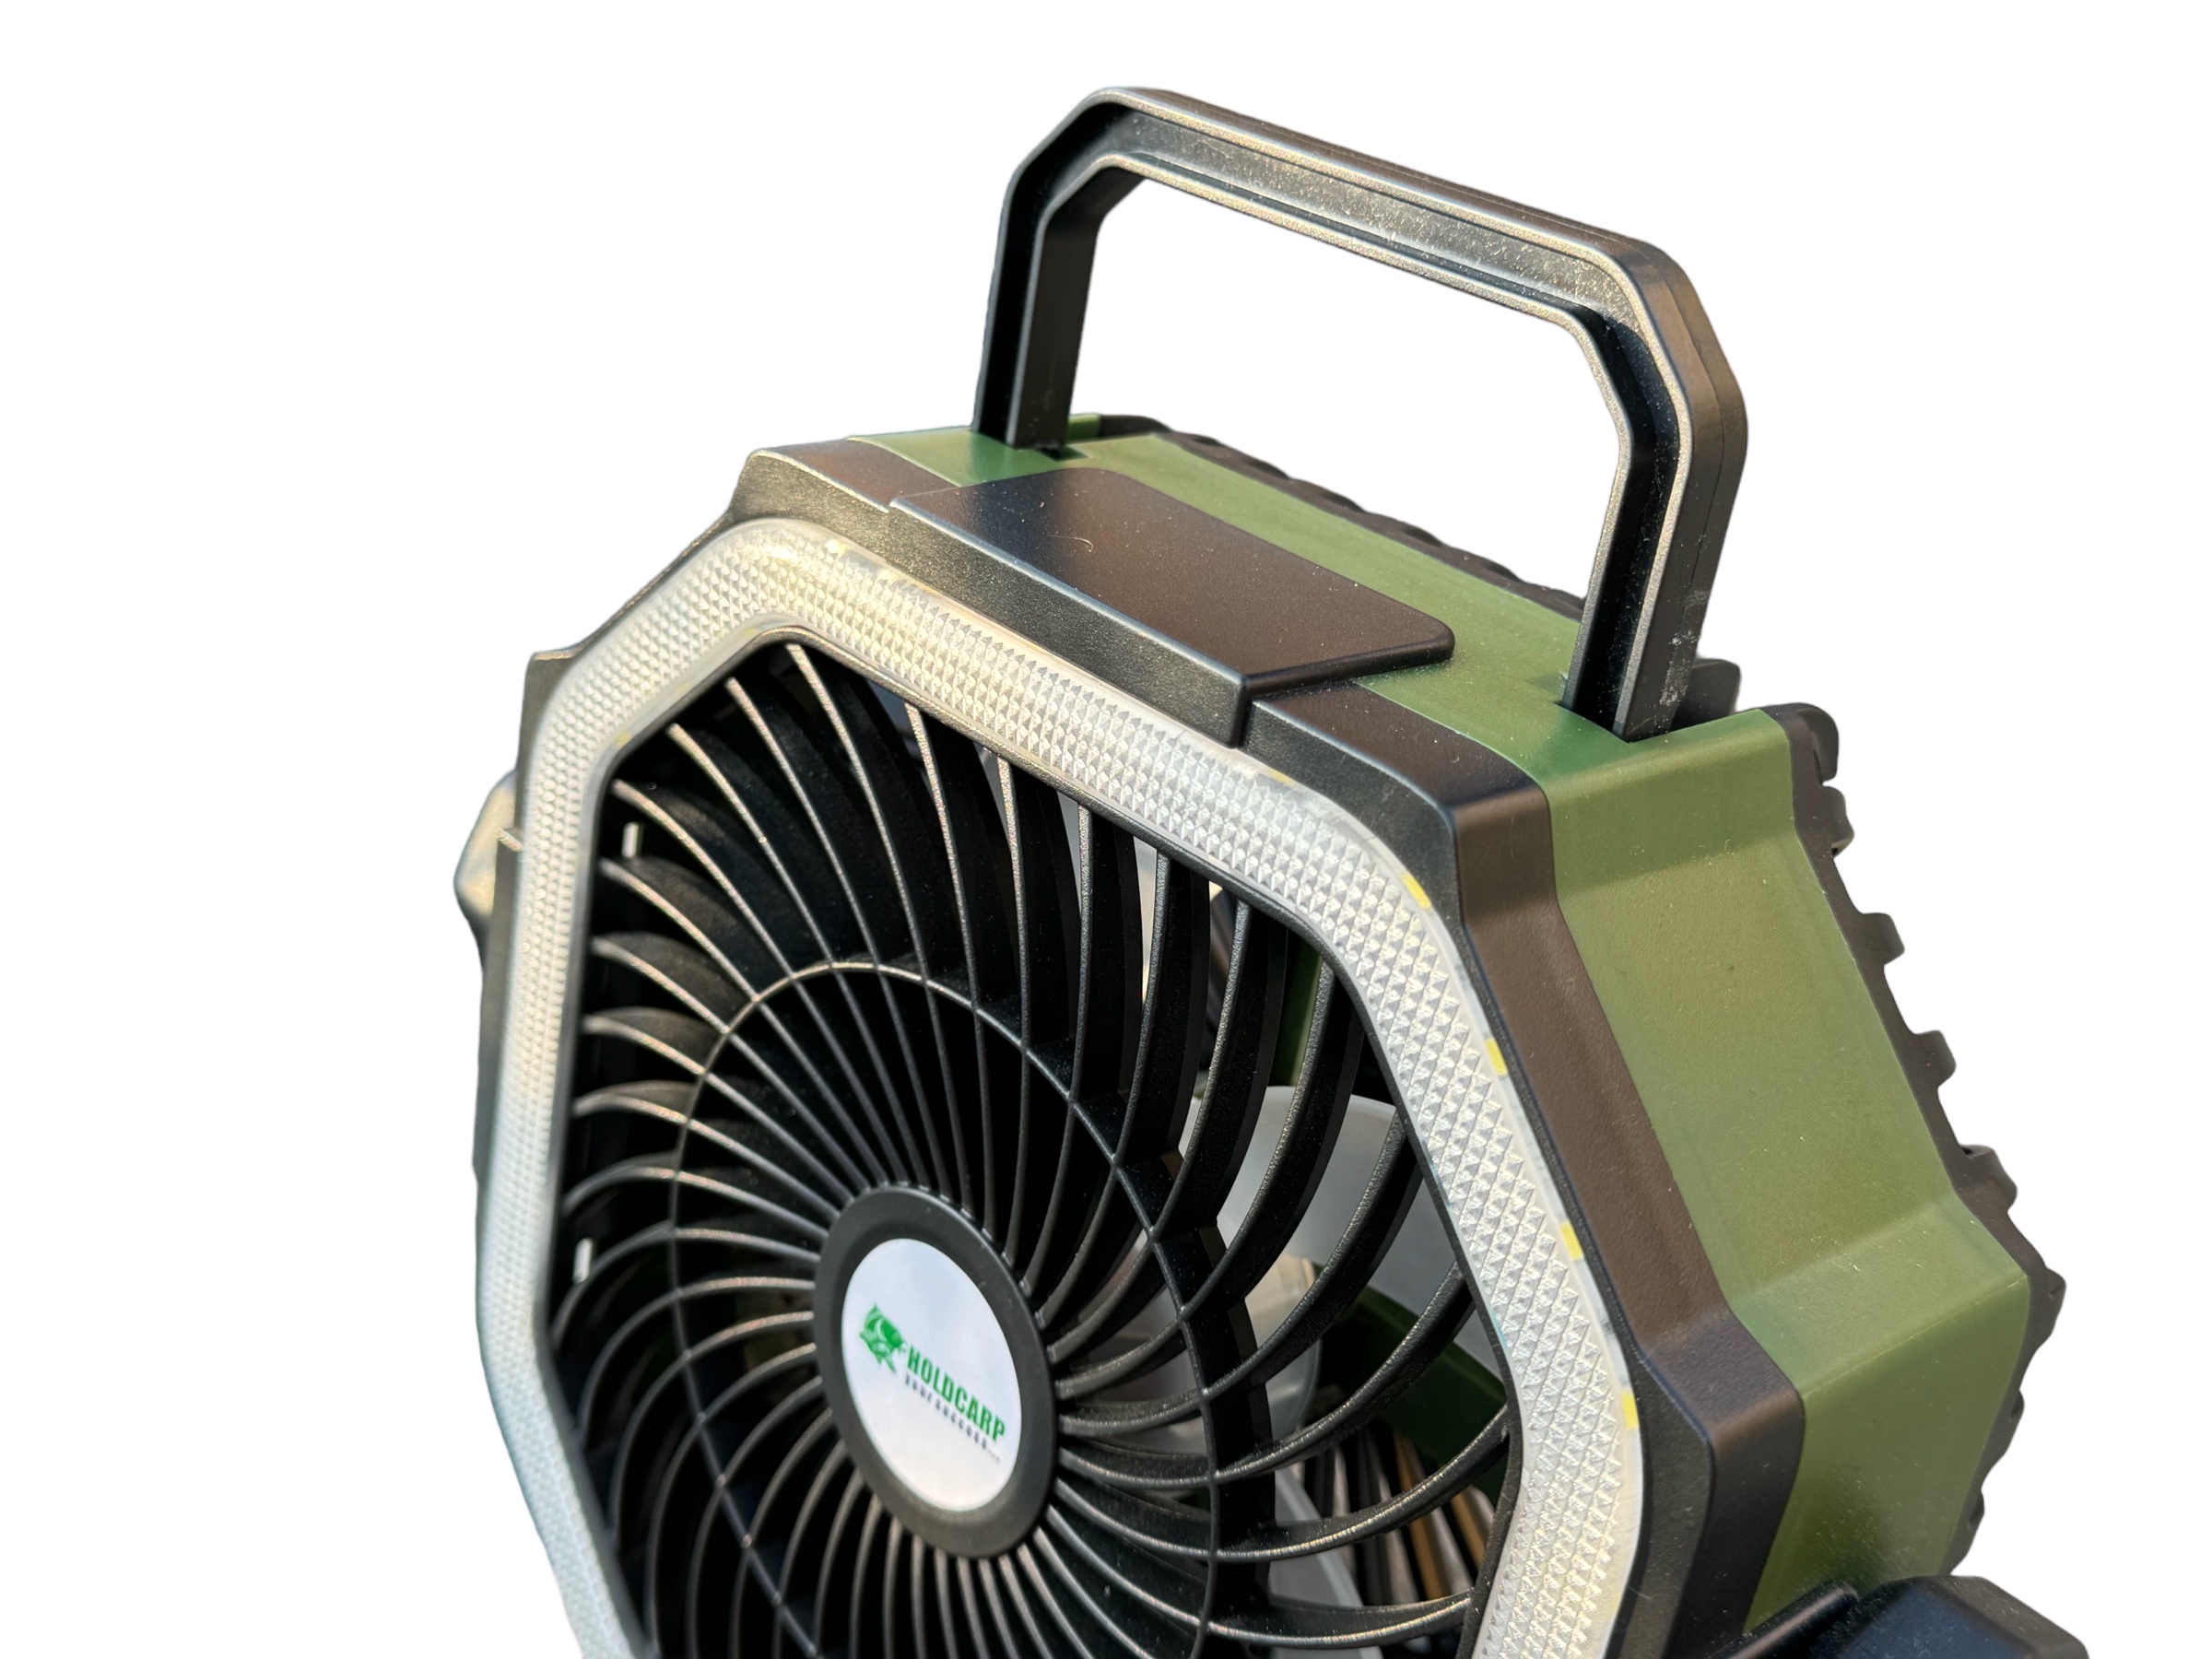 Holdcarp Rechargeable Fan (Z Powerbankiem 20000mAh)